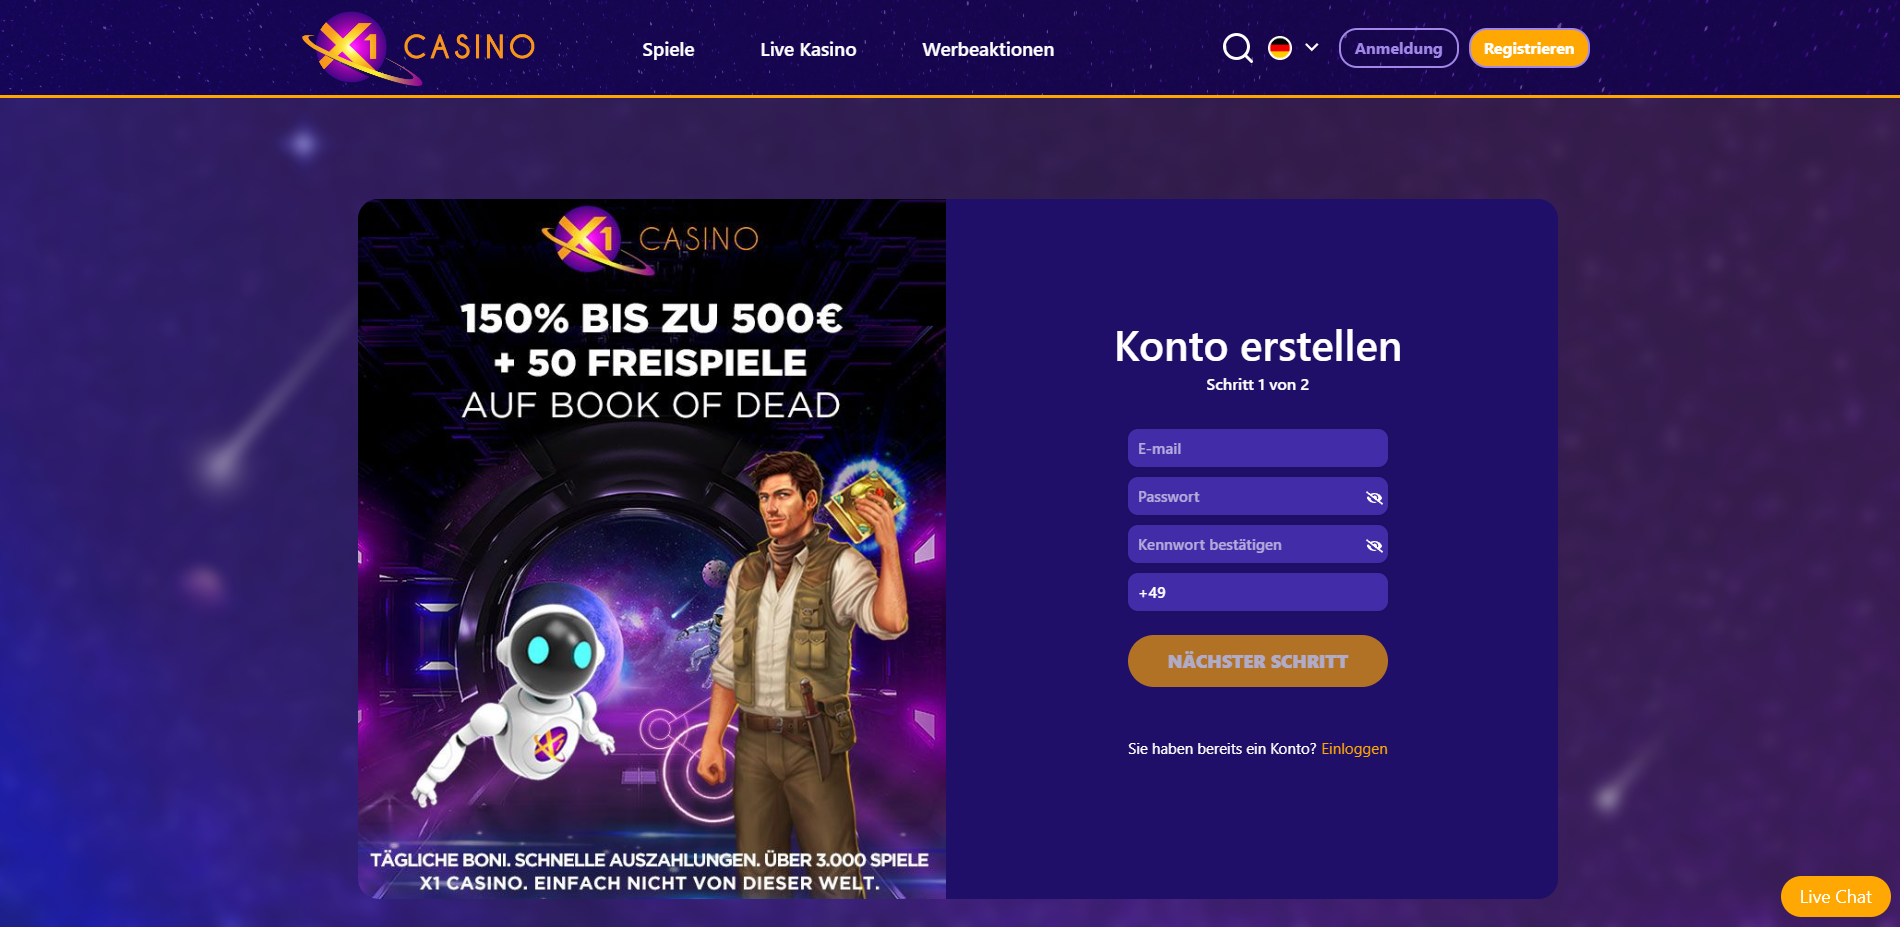 X1 Casino Bonus